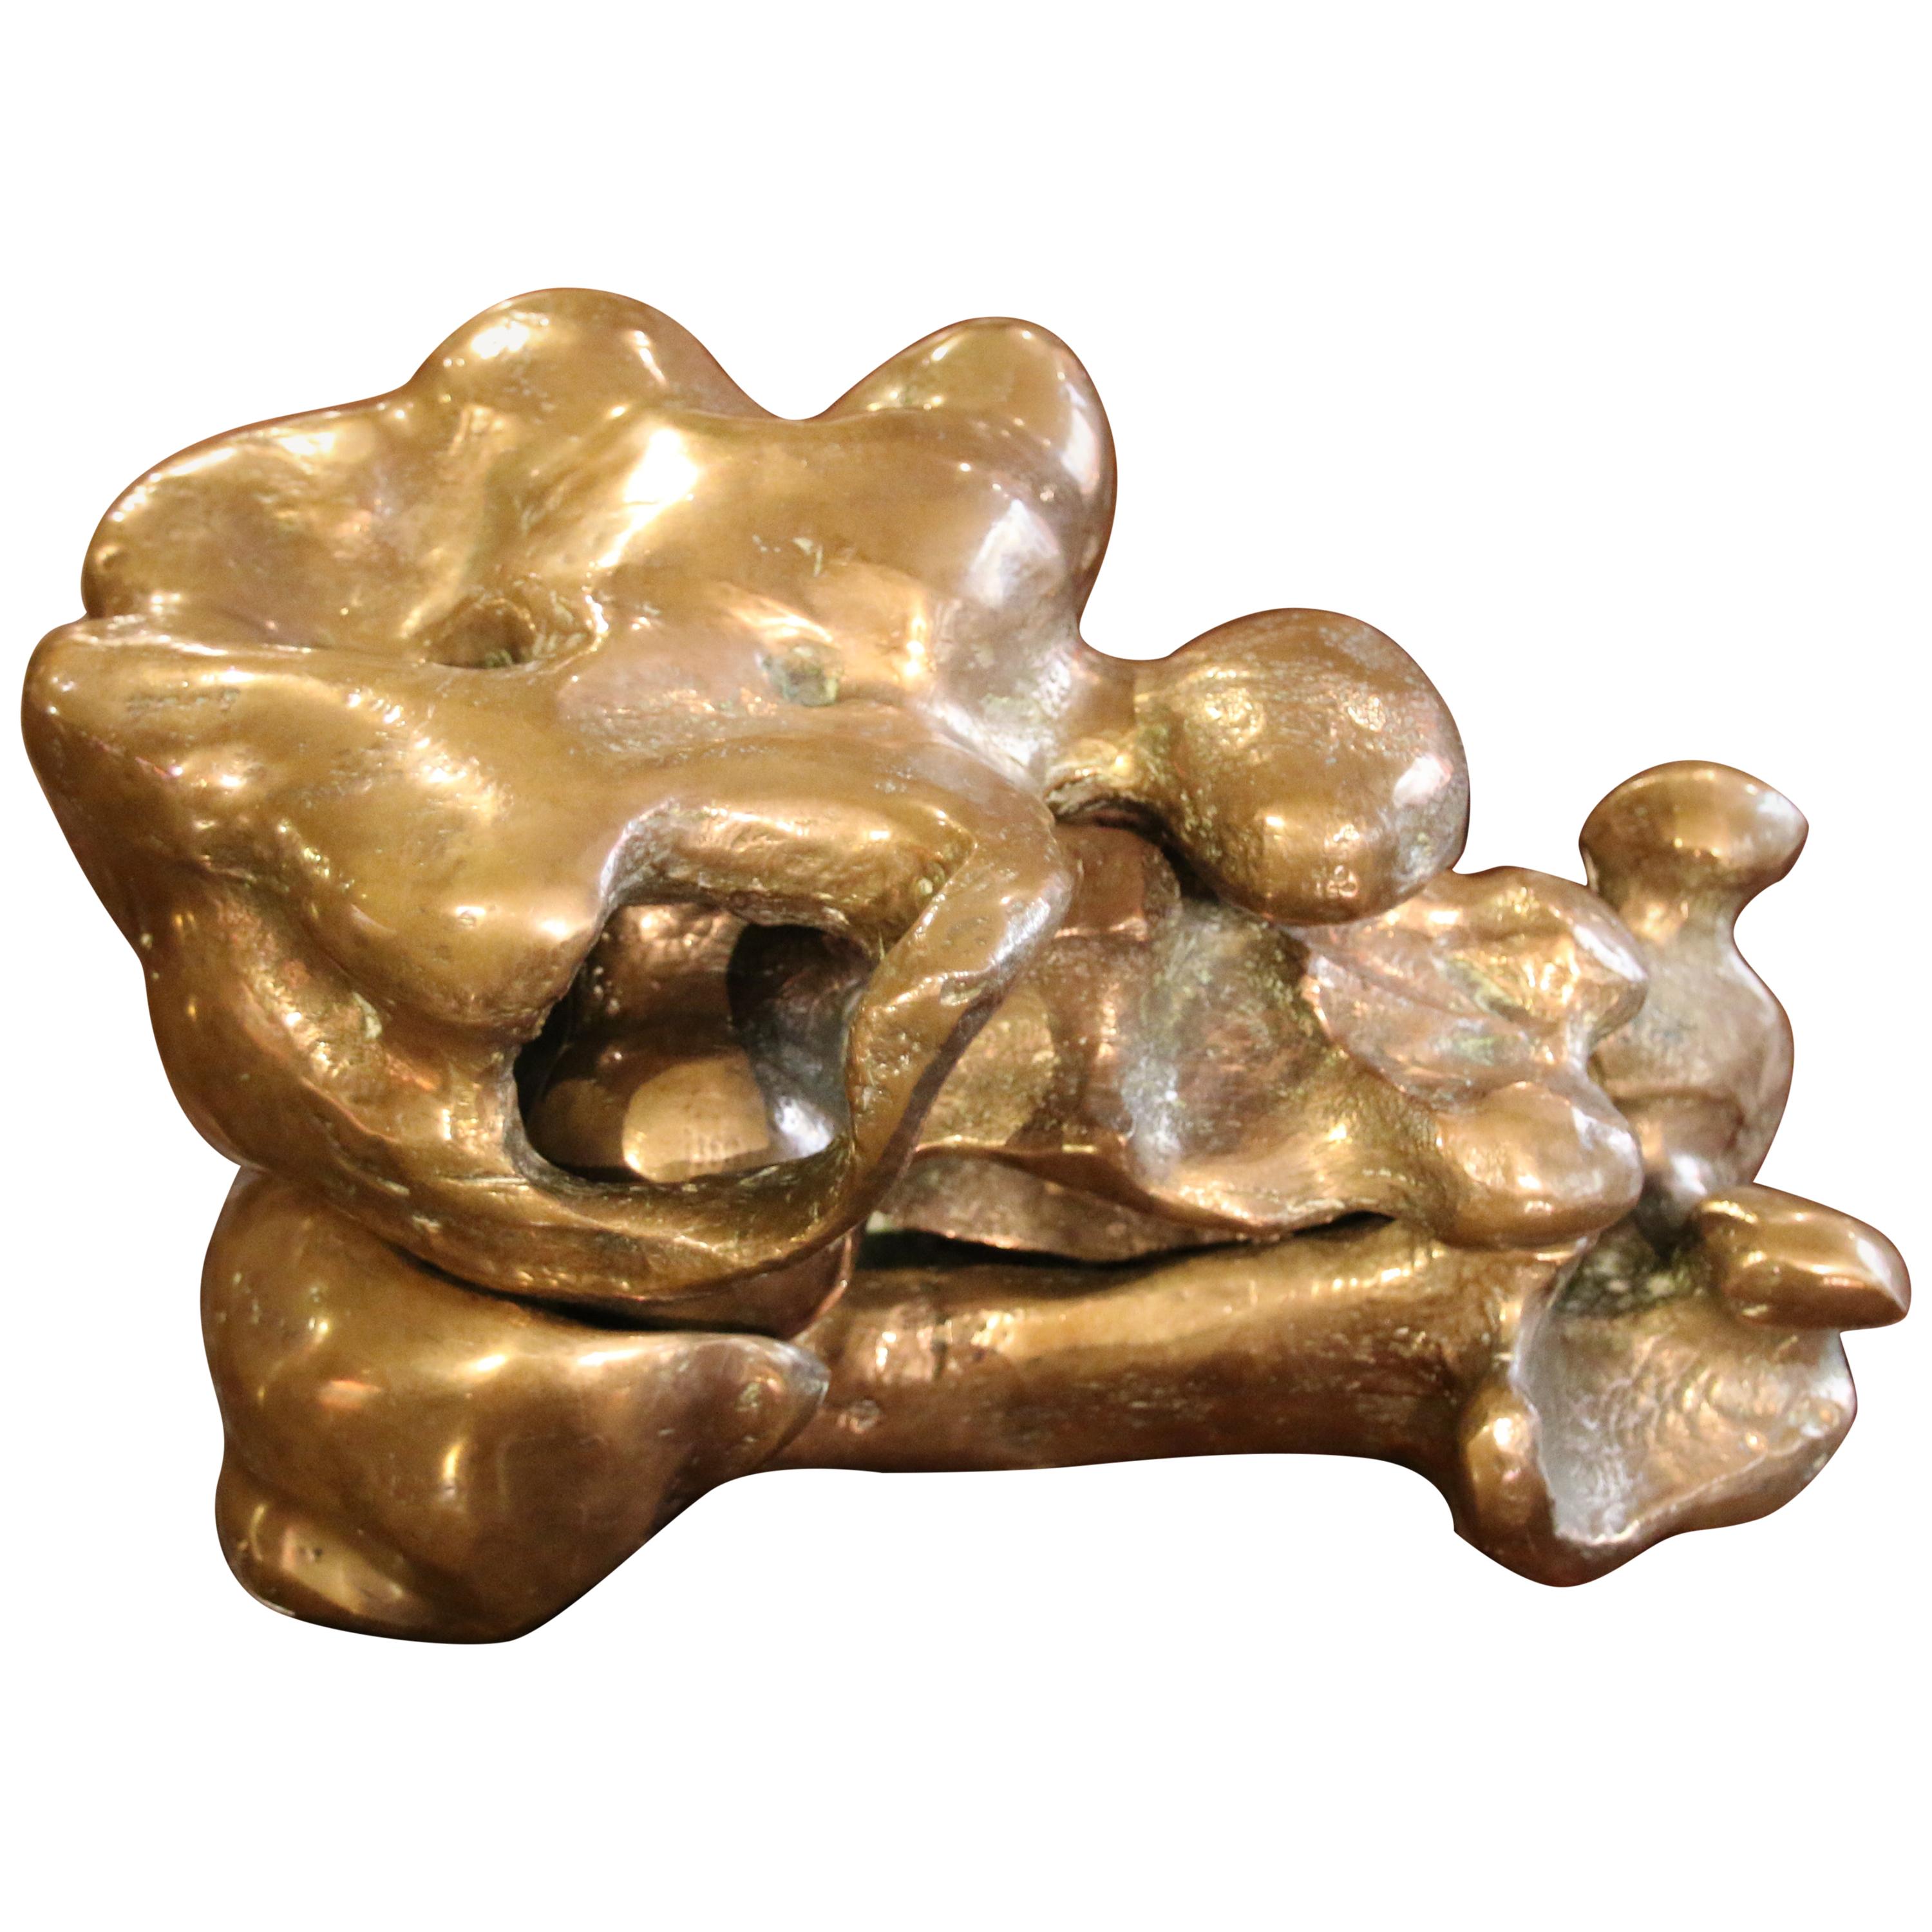 Bronze Sculpture "Orage" by Etienne Martin